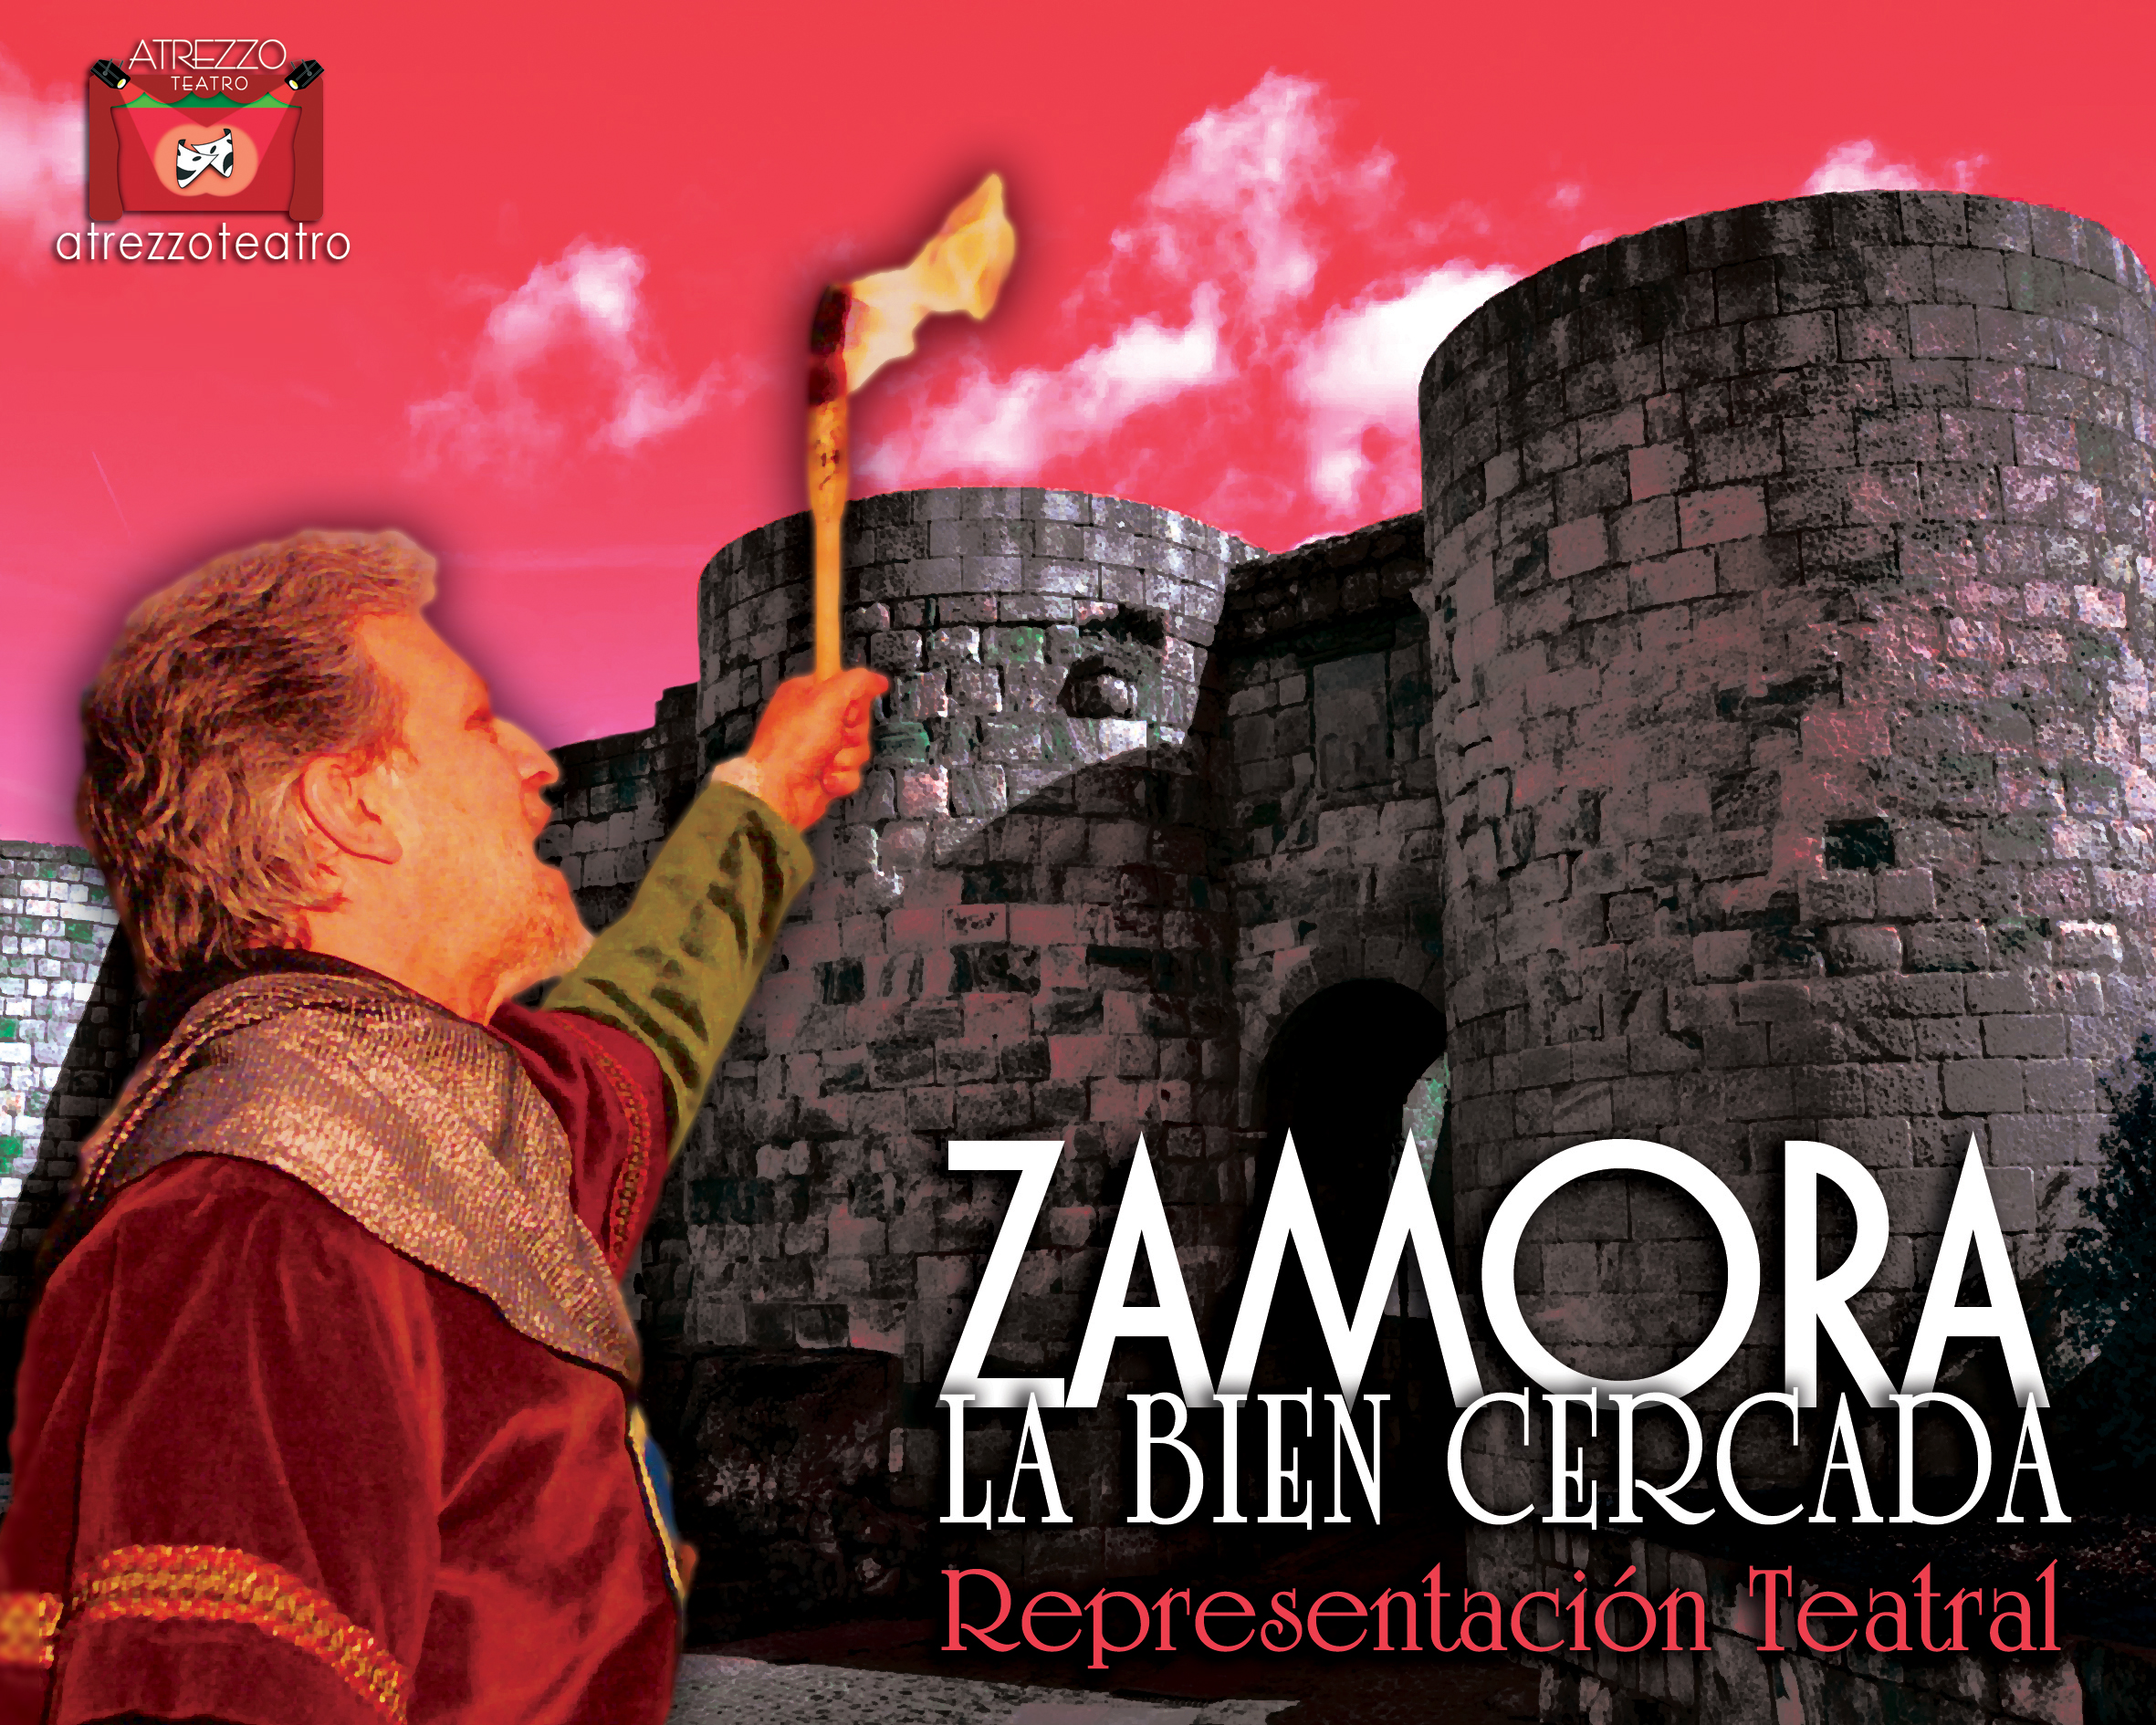 Noches de teatro, Zamora la bien cercada. Agenda cultural. Zamora Inquieta